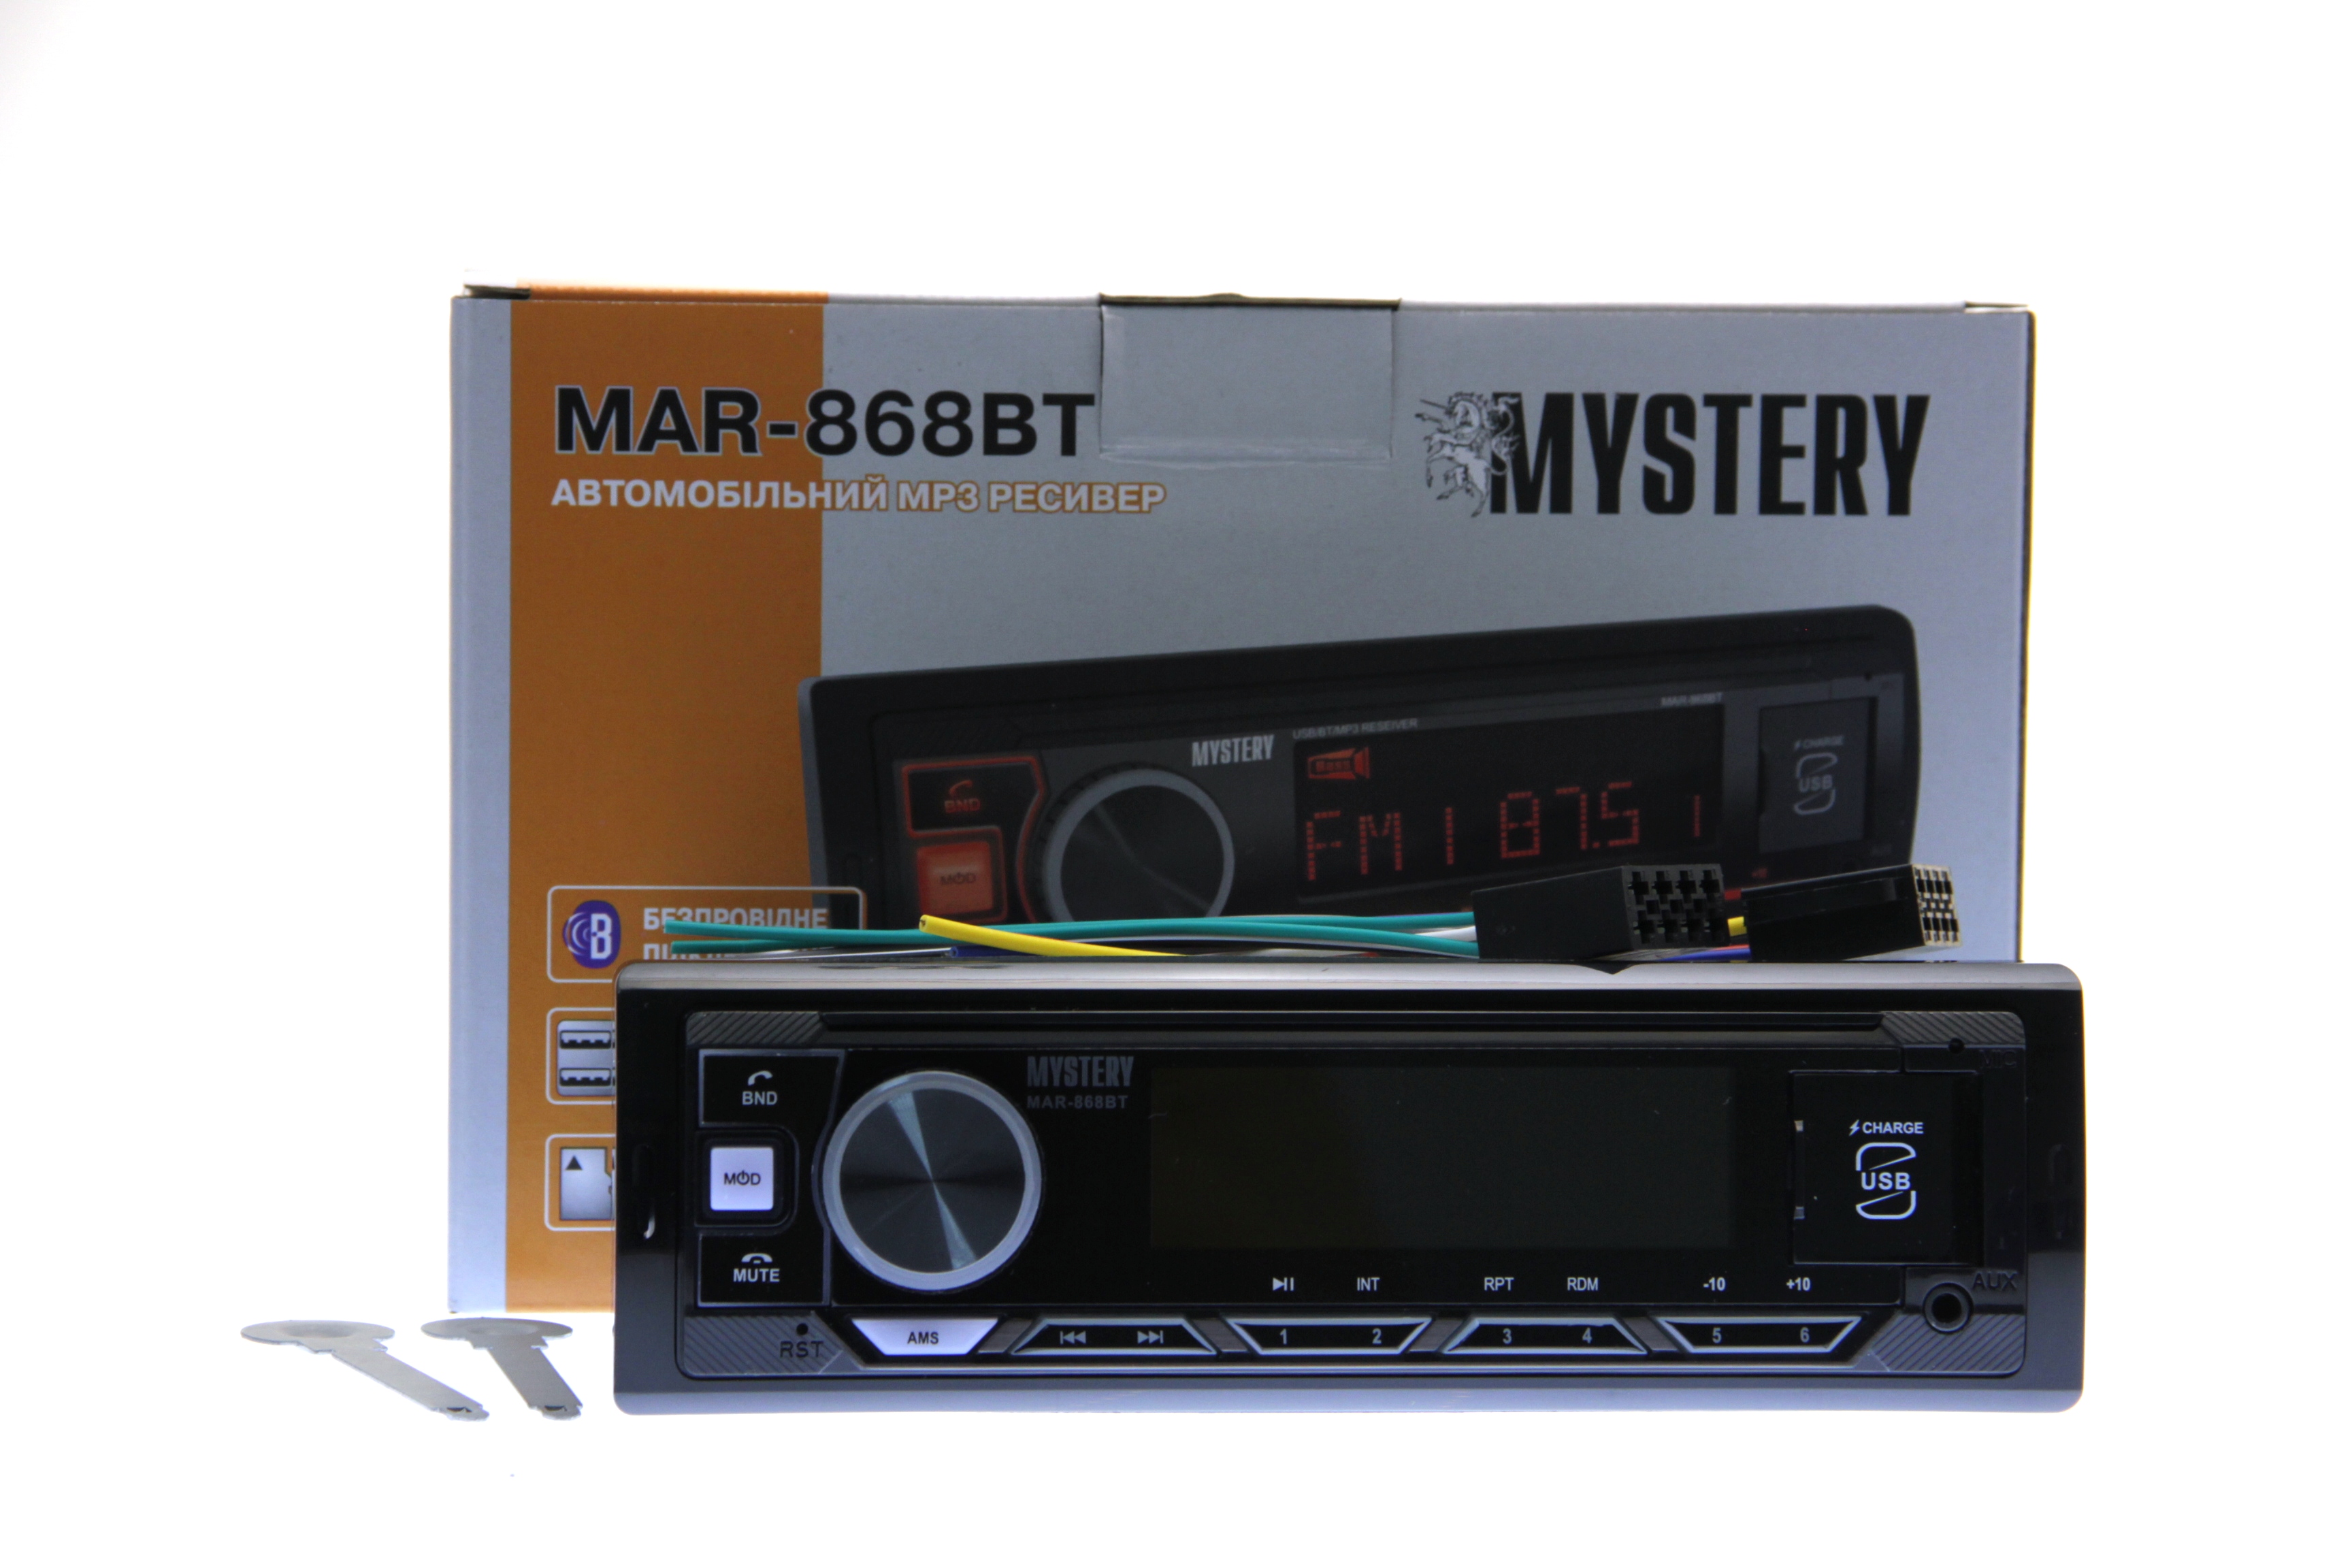 Автомобільний ресивер Mystery MAR-868BT